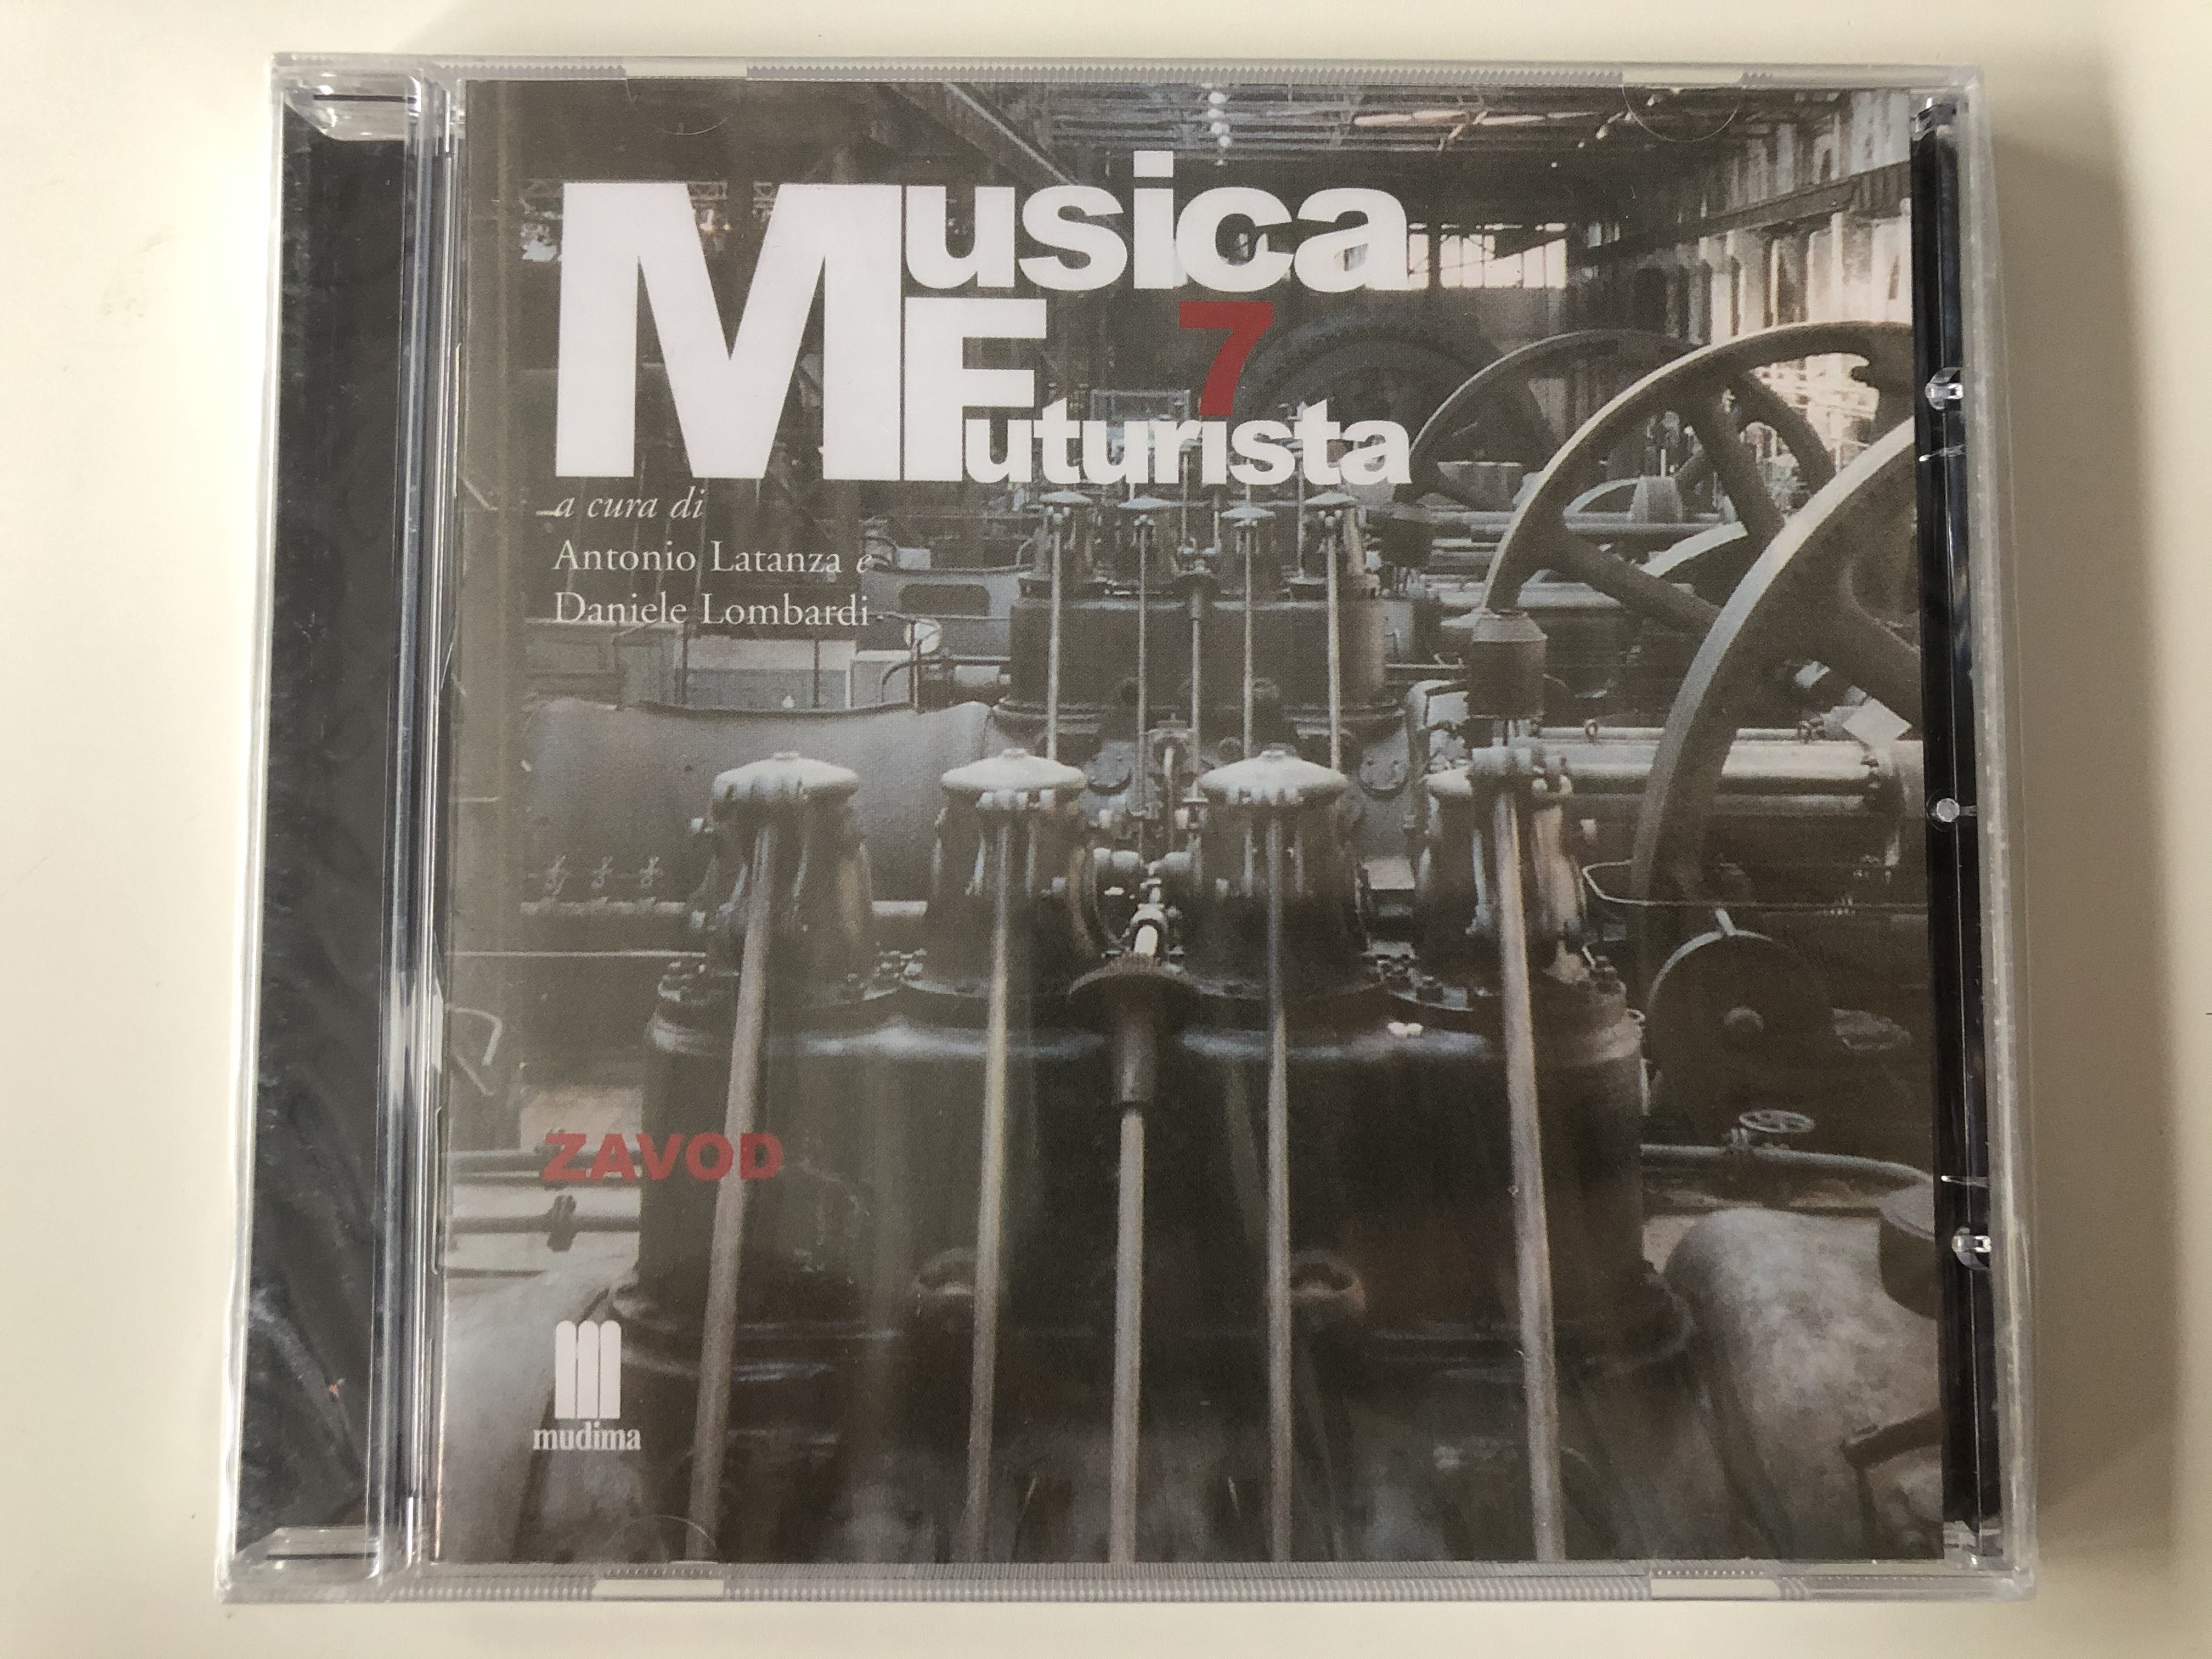 musica-futurista-7-a-cura-di-antonio-latanza-daniele-lombardi-zavod-mudima-ed.-musicali-audio-cd-2010-8033224410326-1-.jpg